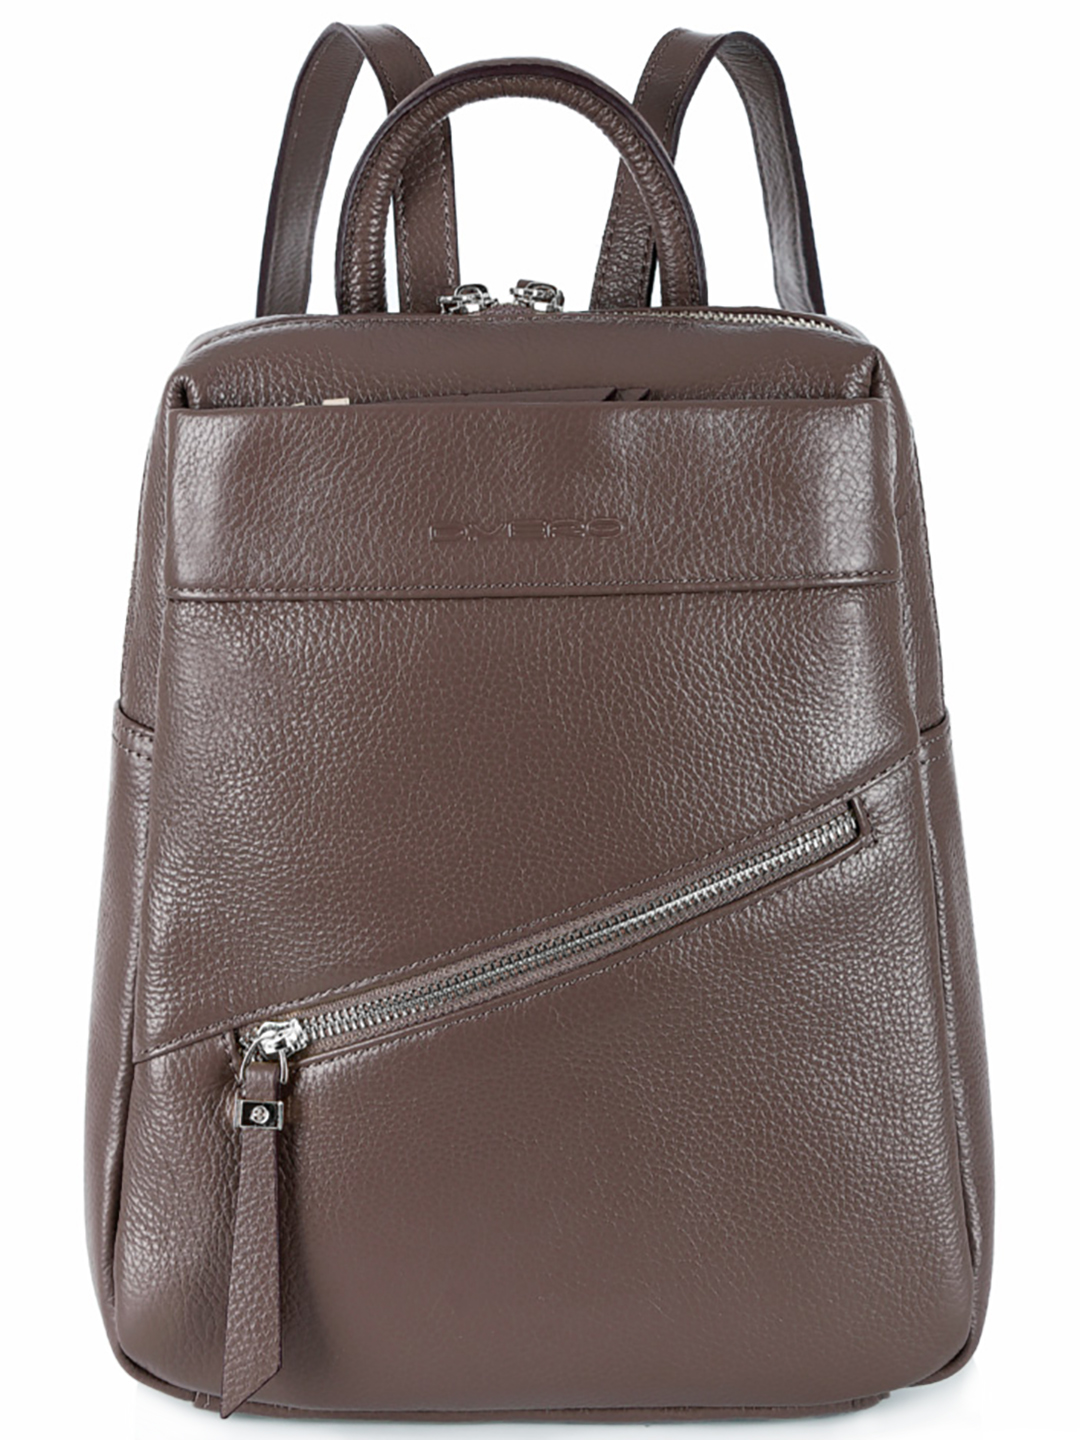 Рюкзак женский D.Vero 2760 коричнево-серый, 31х8х23 см